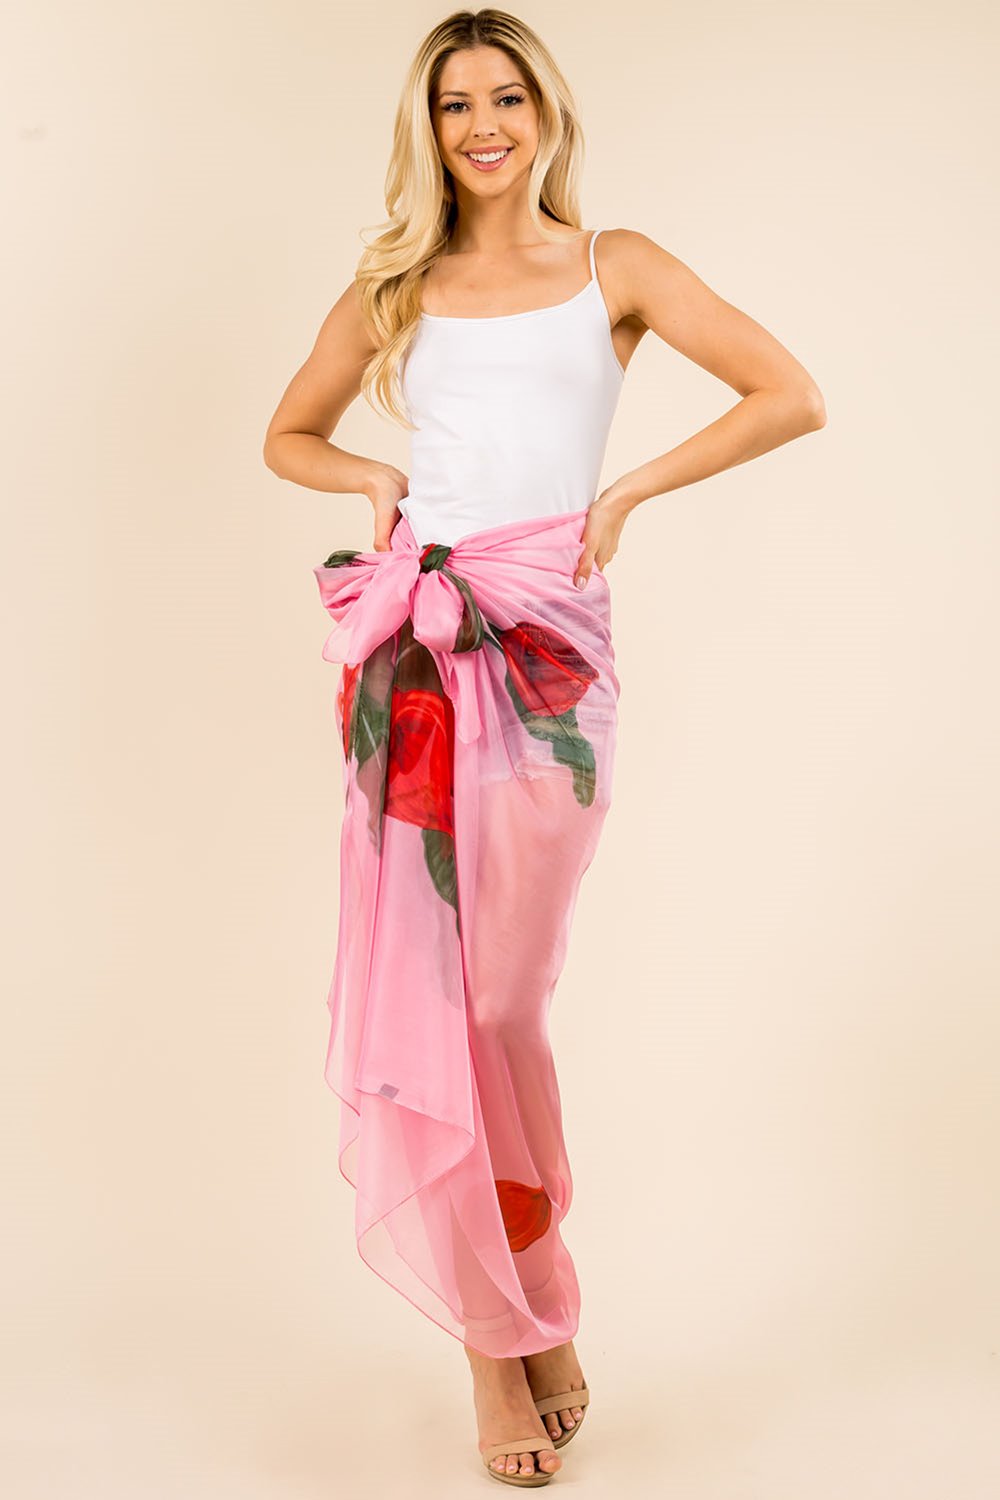 PP-3360 big floral design sarong